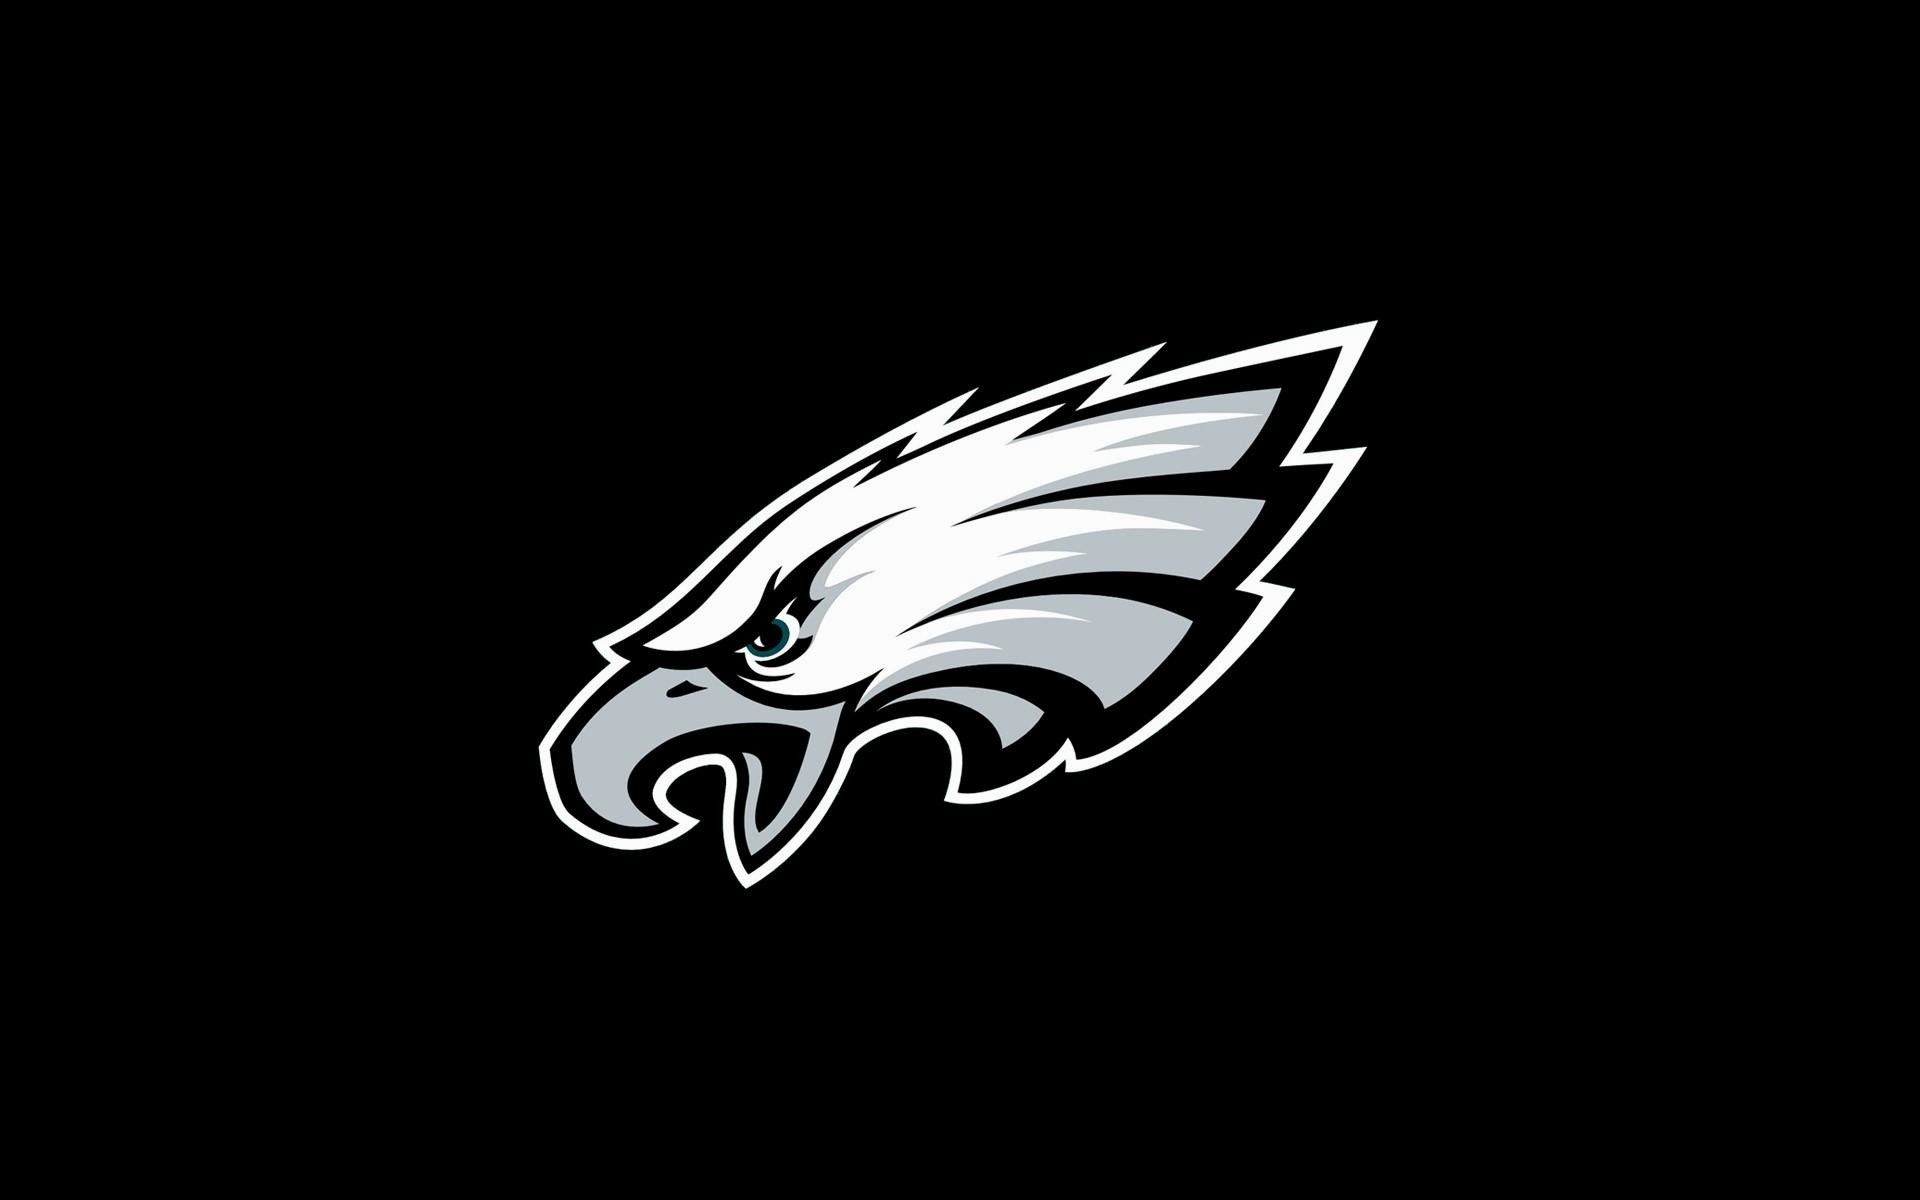 Black Eagles Logo & Free Black Eagles Logo.png Transparent Image